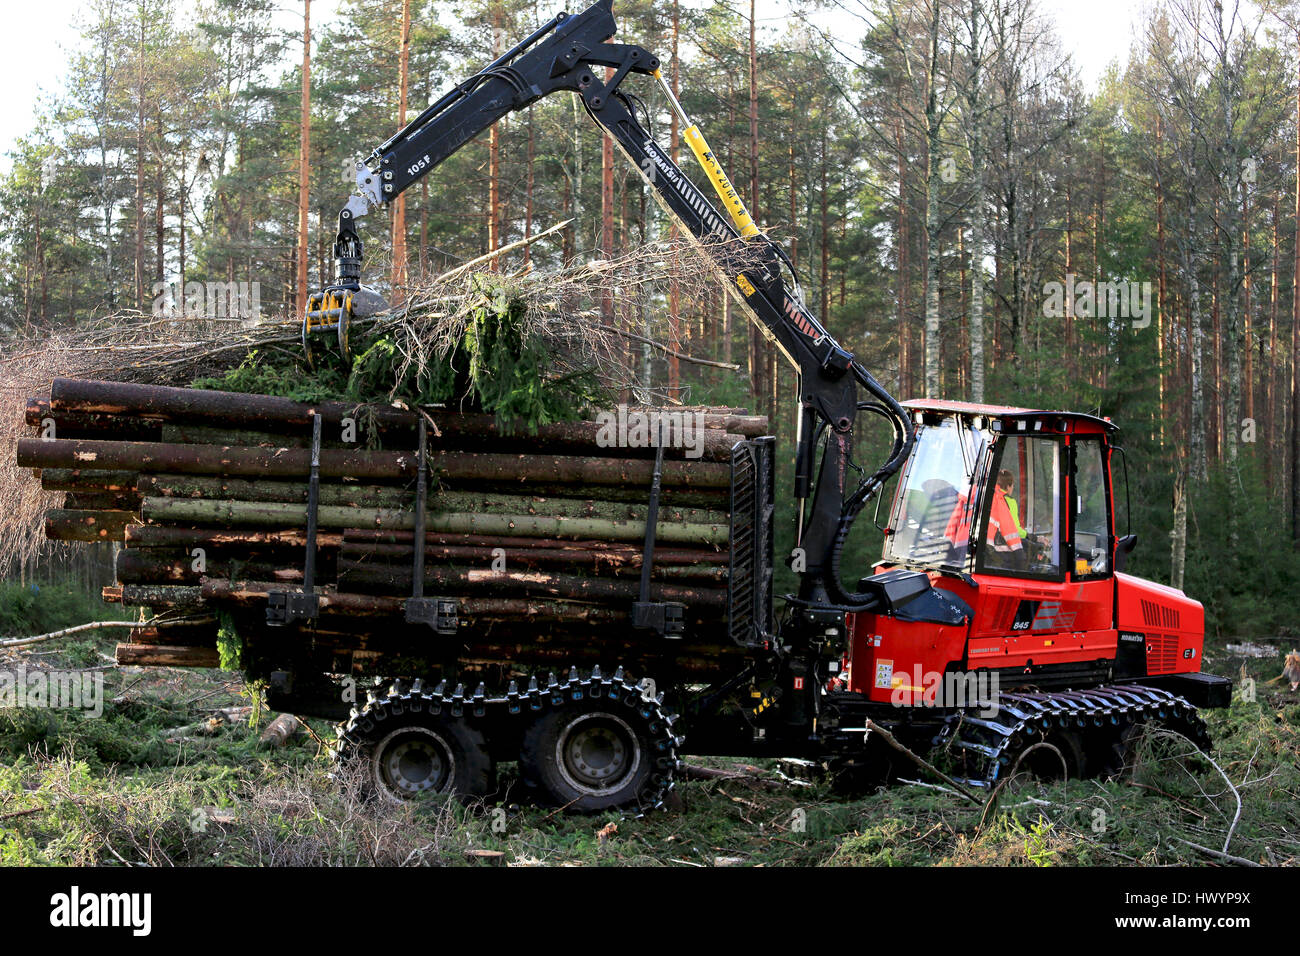 SALO, FINLANDE - le 19 novembre 2016 : l'opérateur sans nom empile le bois sur la couchette de Komatsu 845 transitaire forestier en forêt. Banque D'Images